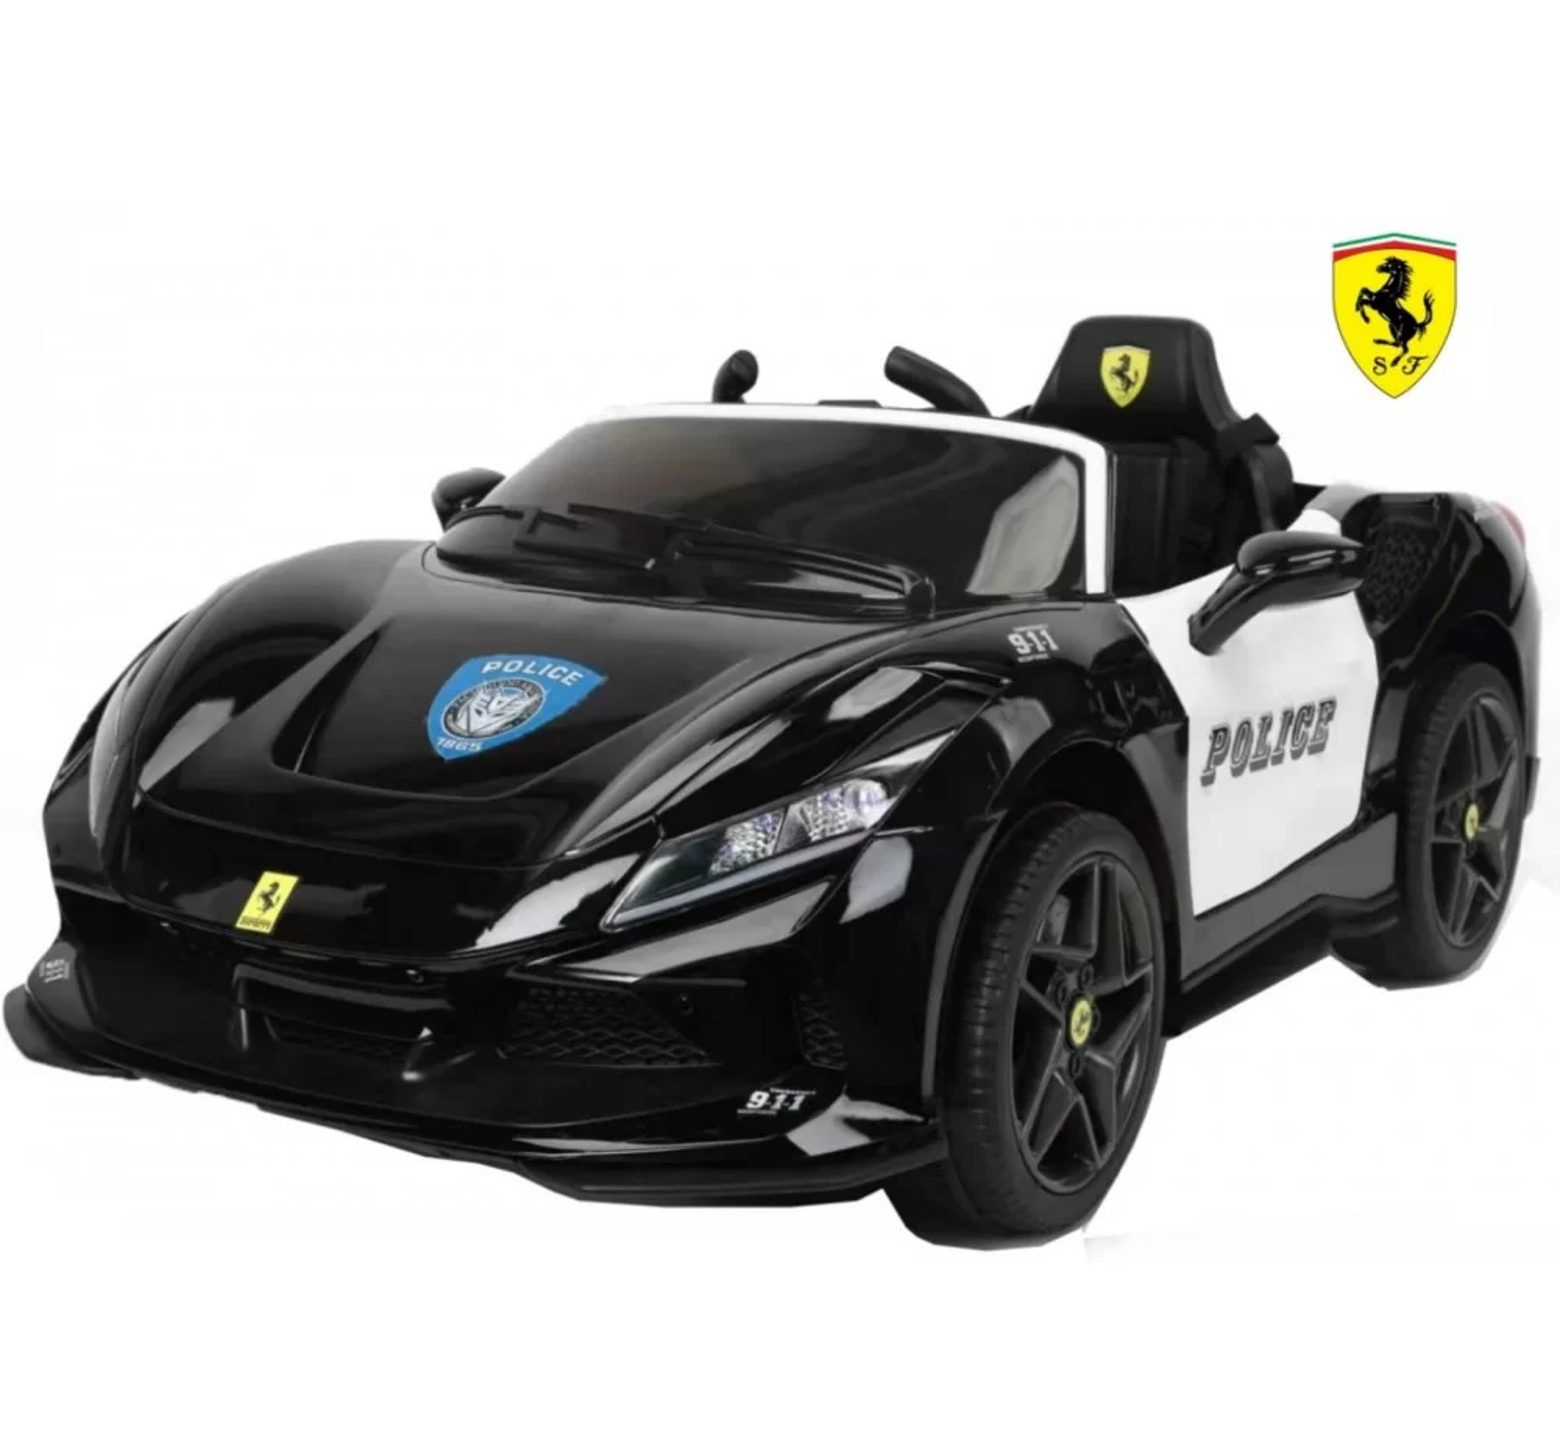 Ηλεκτροκίνητο Παιδικό Αυτοκίνητο 12V Licensed Ferrari police με 4 μοτέρ 